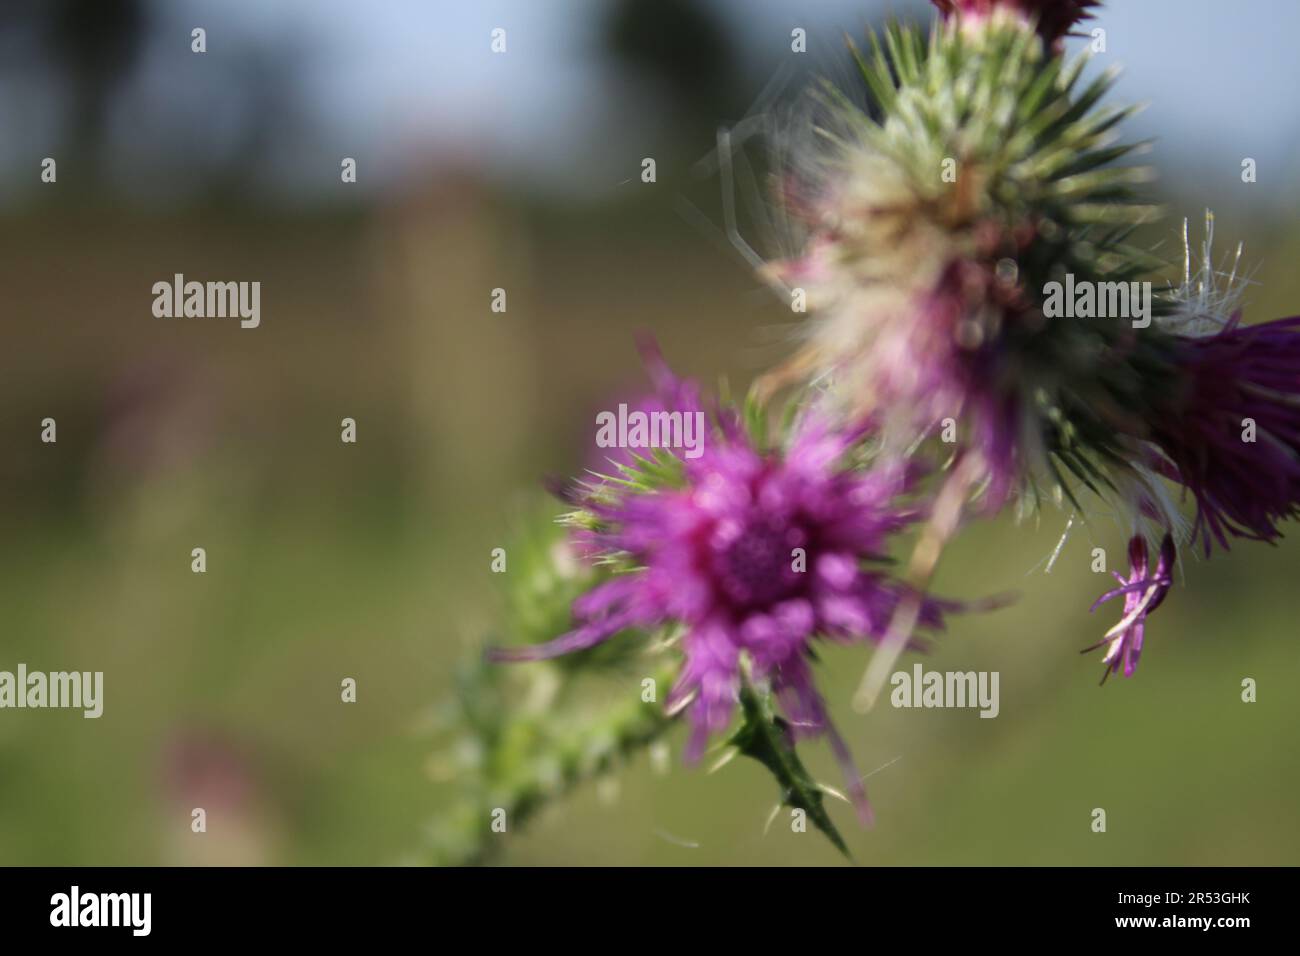 Macrophotographie de fleurs sauvages violettes. Scène de prairie en été. Image de la flore à la lumière du jour. Arrière-plan flou. Tête de fleur moelleuse. Temps venteux. Banque D'Images